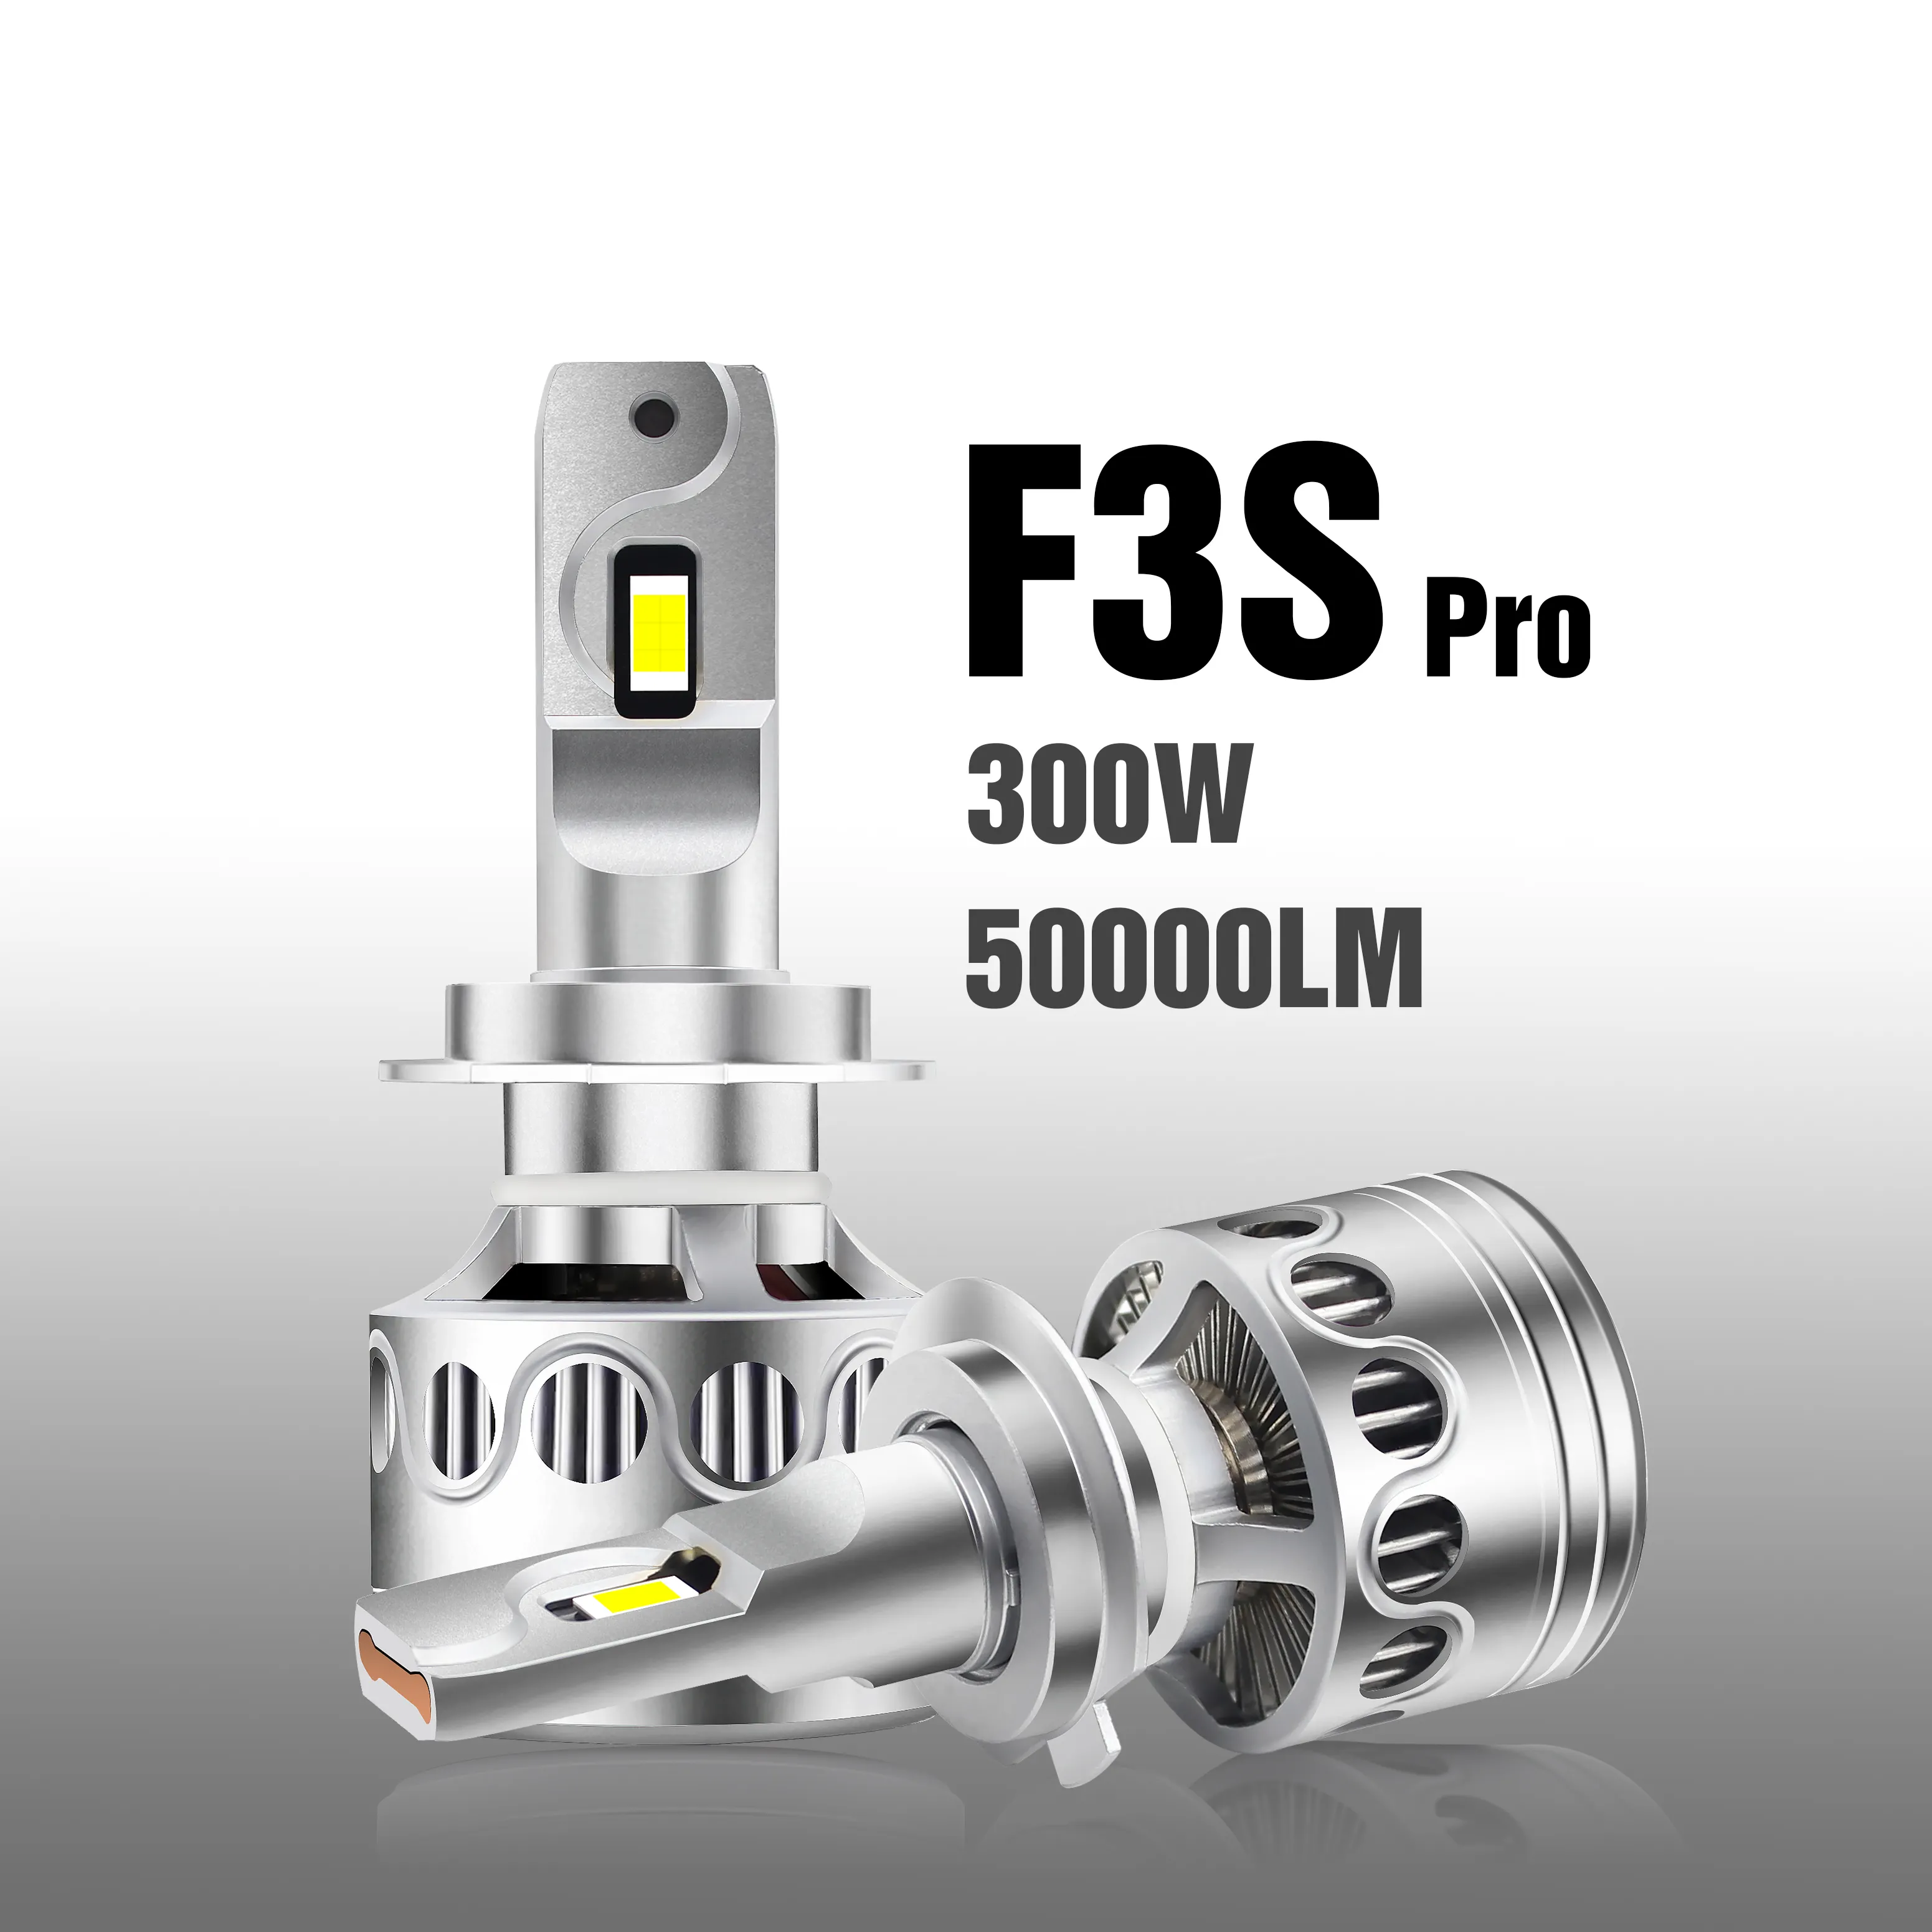 F3S Pro 300W 50000LM faros led Hi/Lo קרן LED רכב אור H7 H11 9006 9007 HB5 LED פנס נורות 12V LED פנס H4 LED